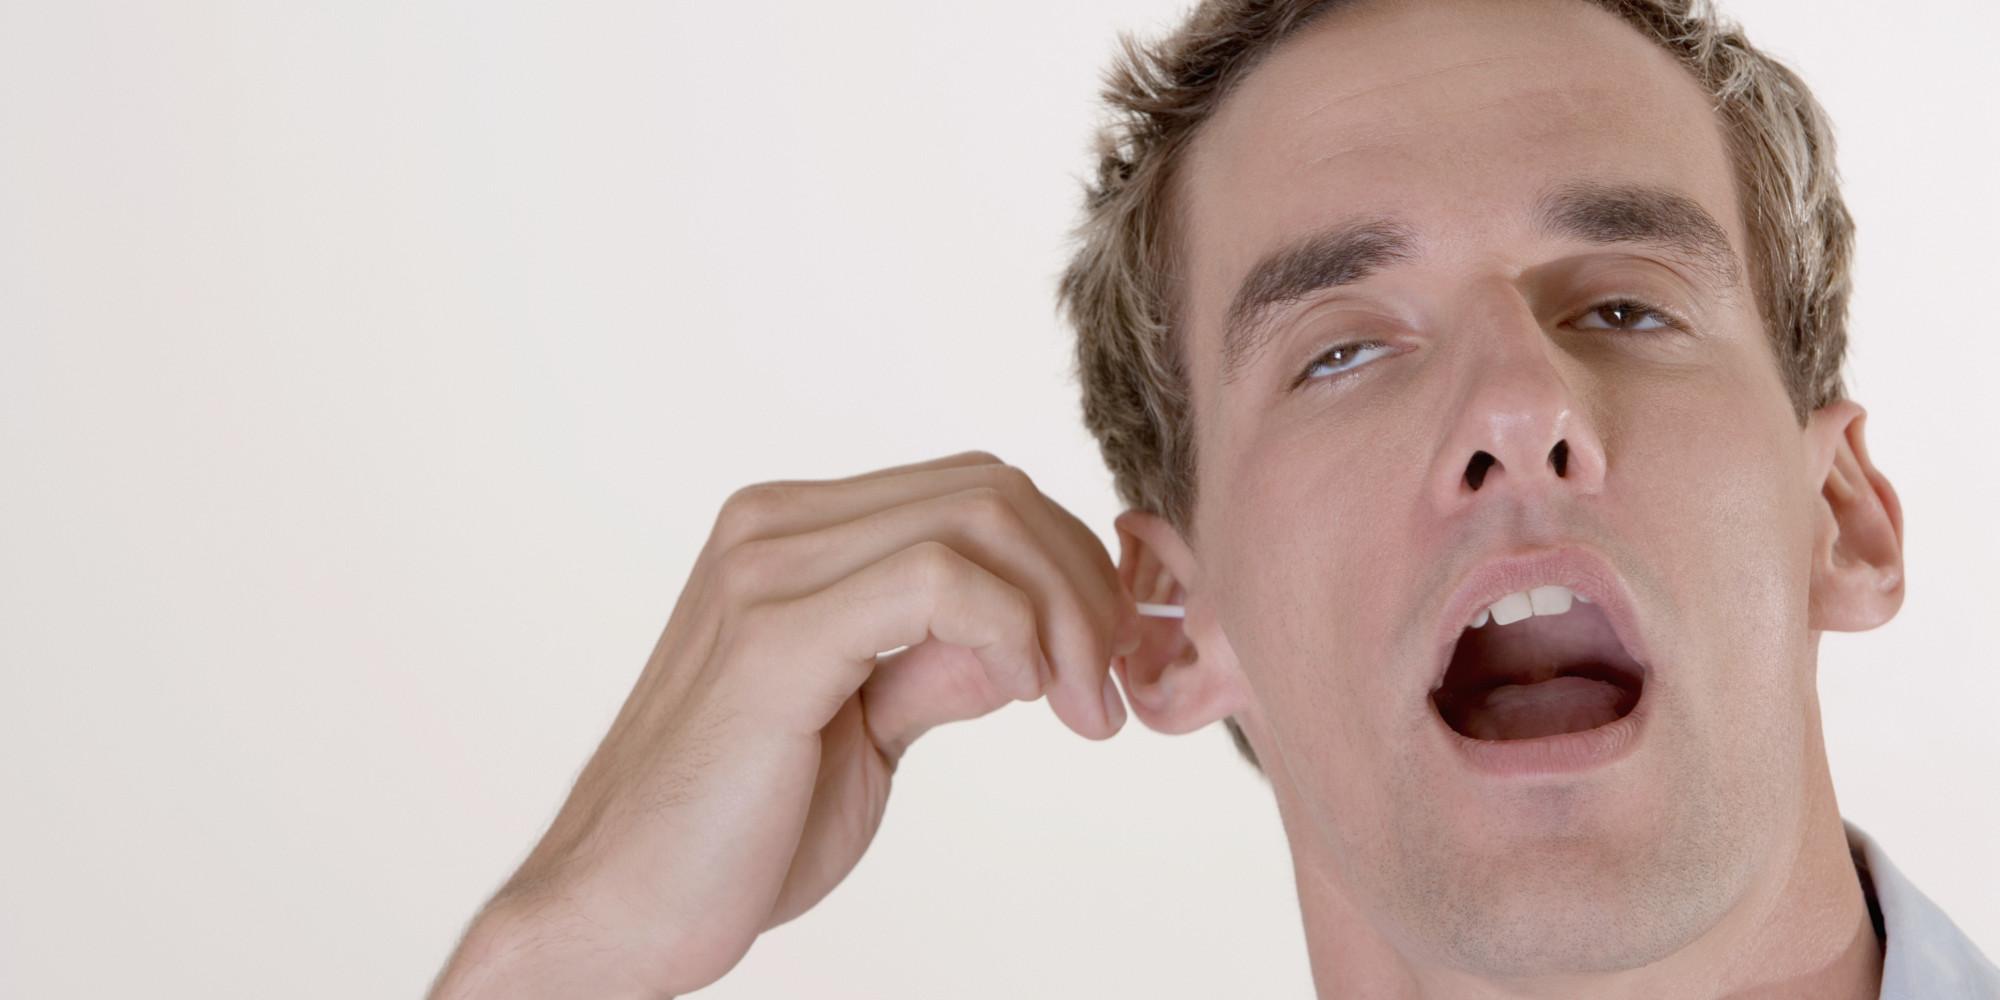 Los peligros de meterse bastoncillos en el oído